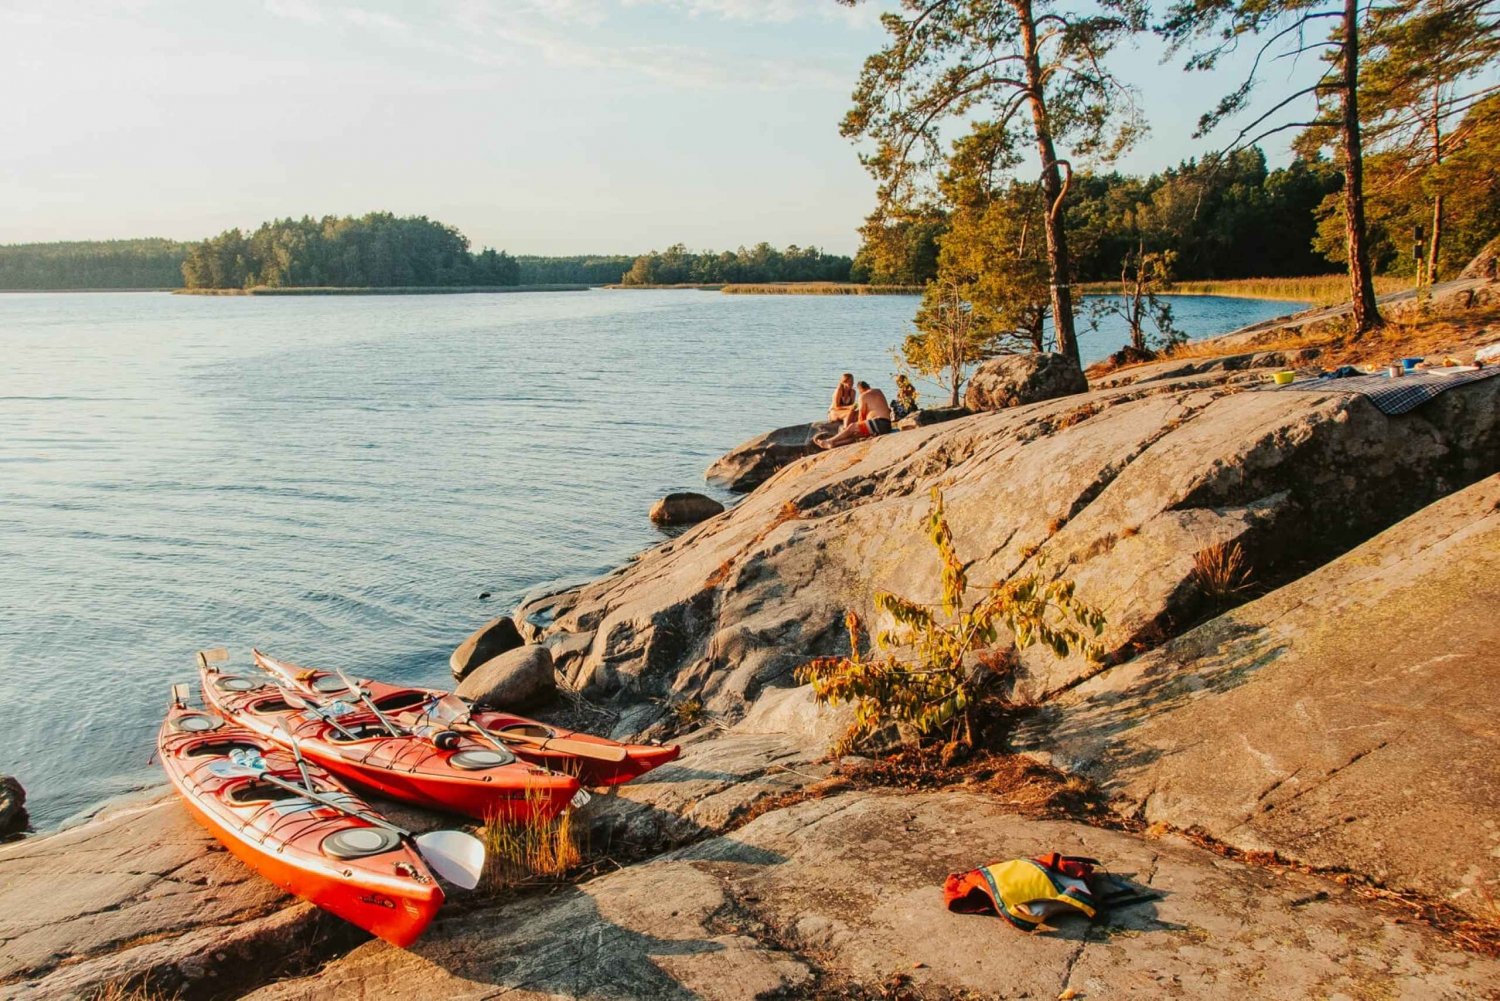 Estocolmo: Excursión Privada en Kayak por el Archipiélago para toda la familia